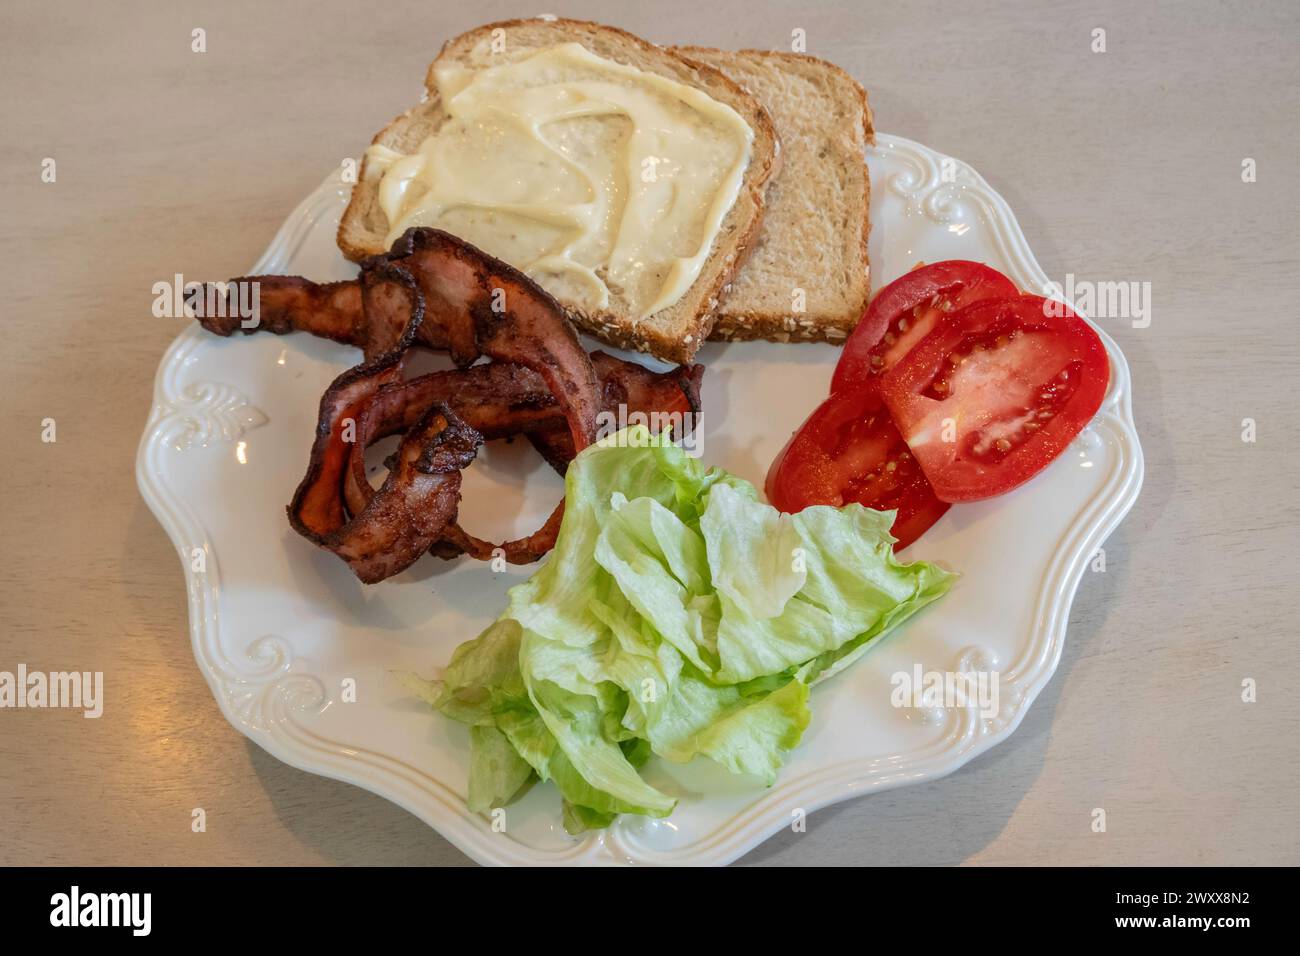 Séparez les ingrédients d'un sandwich bacon, laitue et tomate sur une assiette blanche avec du pain et de la mayonnaise. Banque D'Images